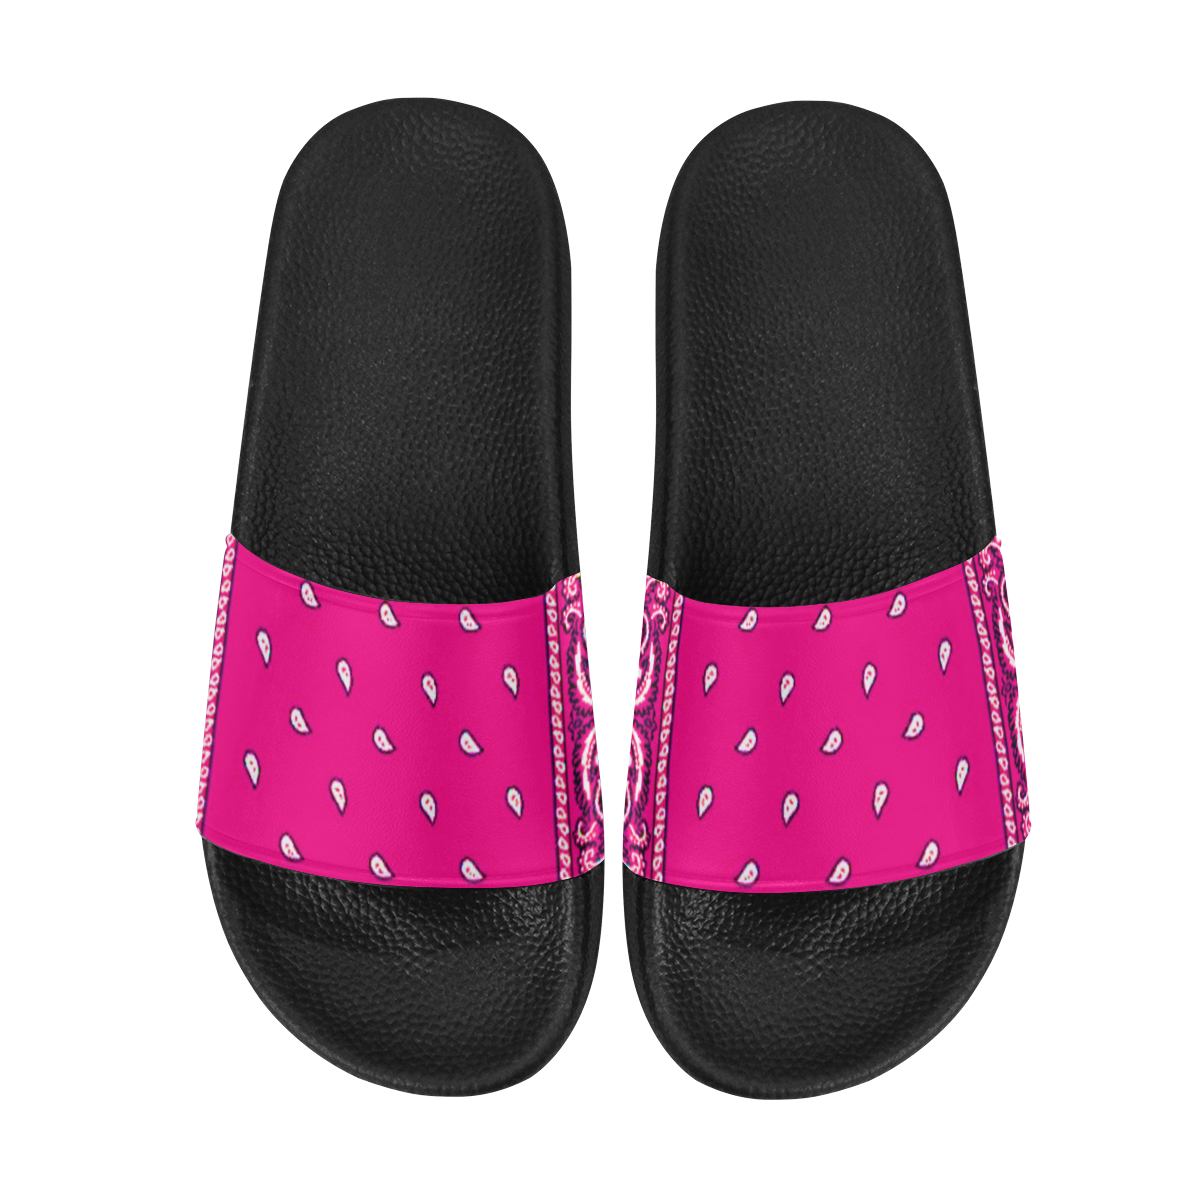 KERCHIEF PATTERN PINK Women's Slide Sandals (Model 057)